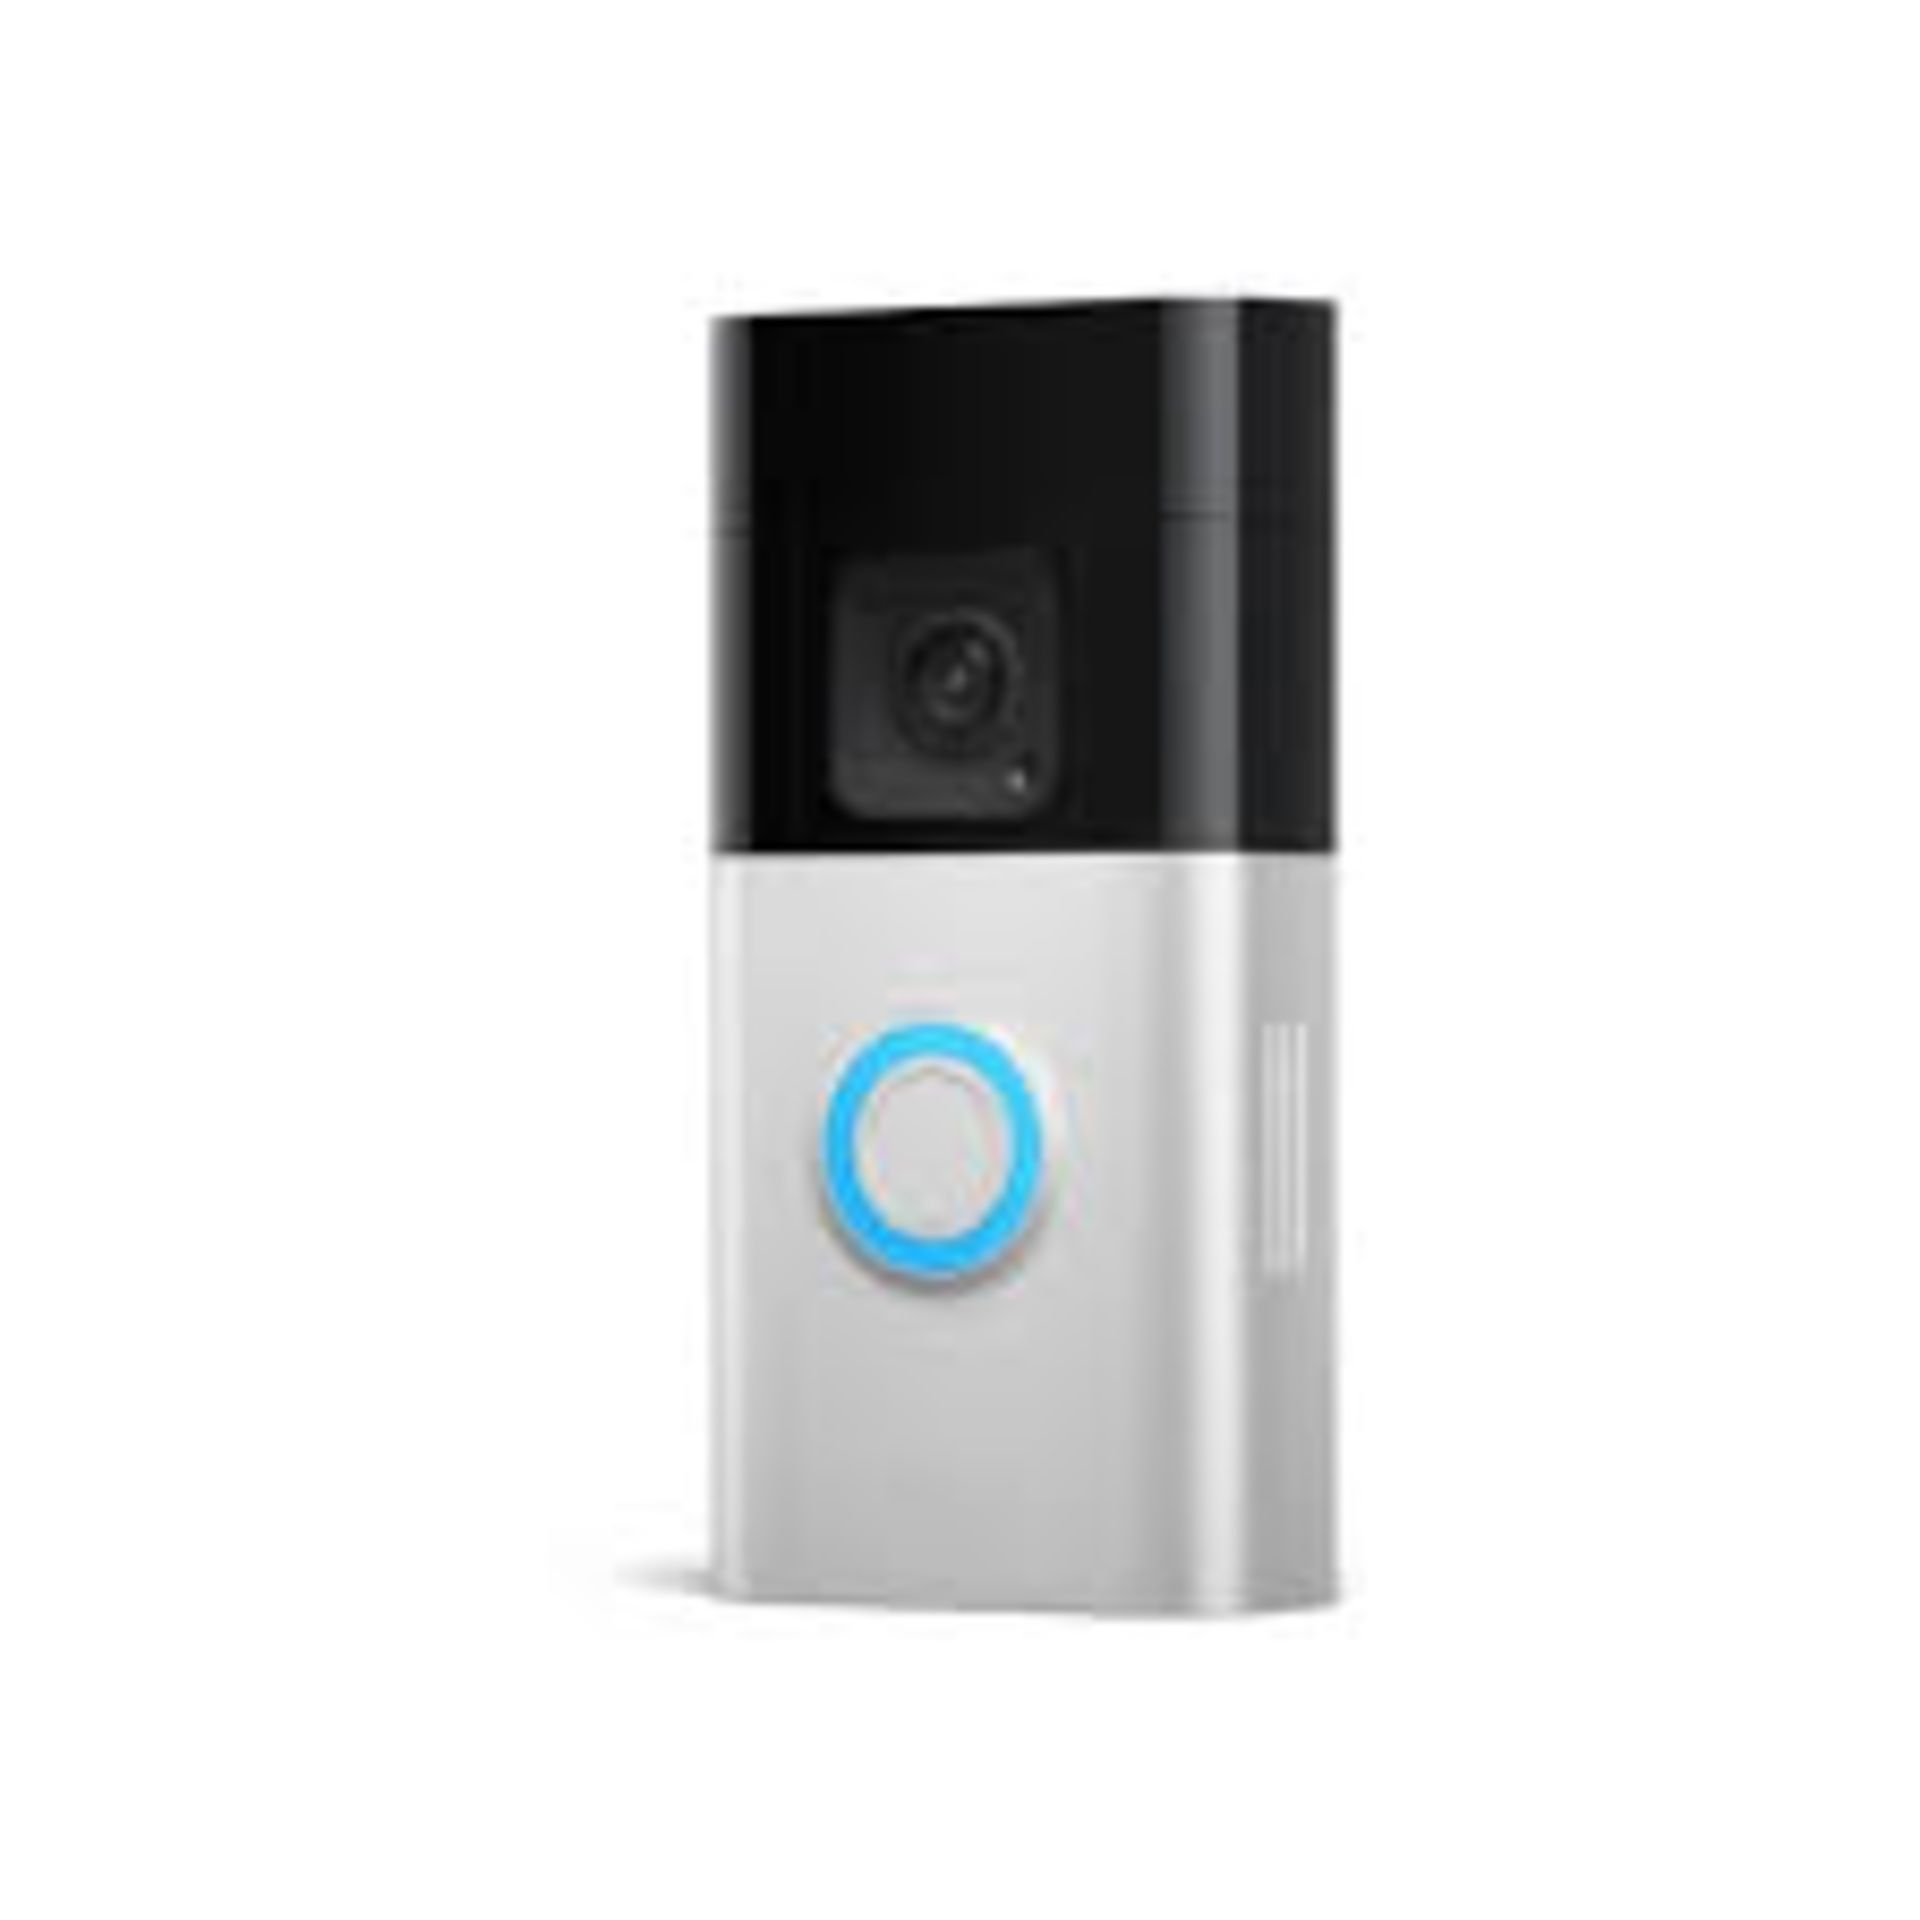 Ring Battery Video Doorbell. - S2.14. The Ring Battery Doorbell Plus is a wireless smart doorbell